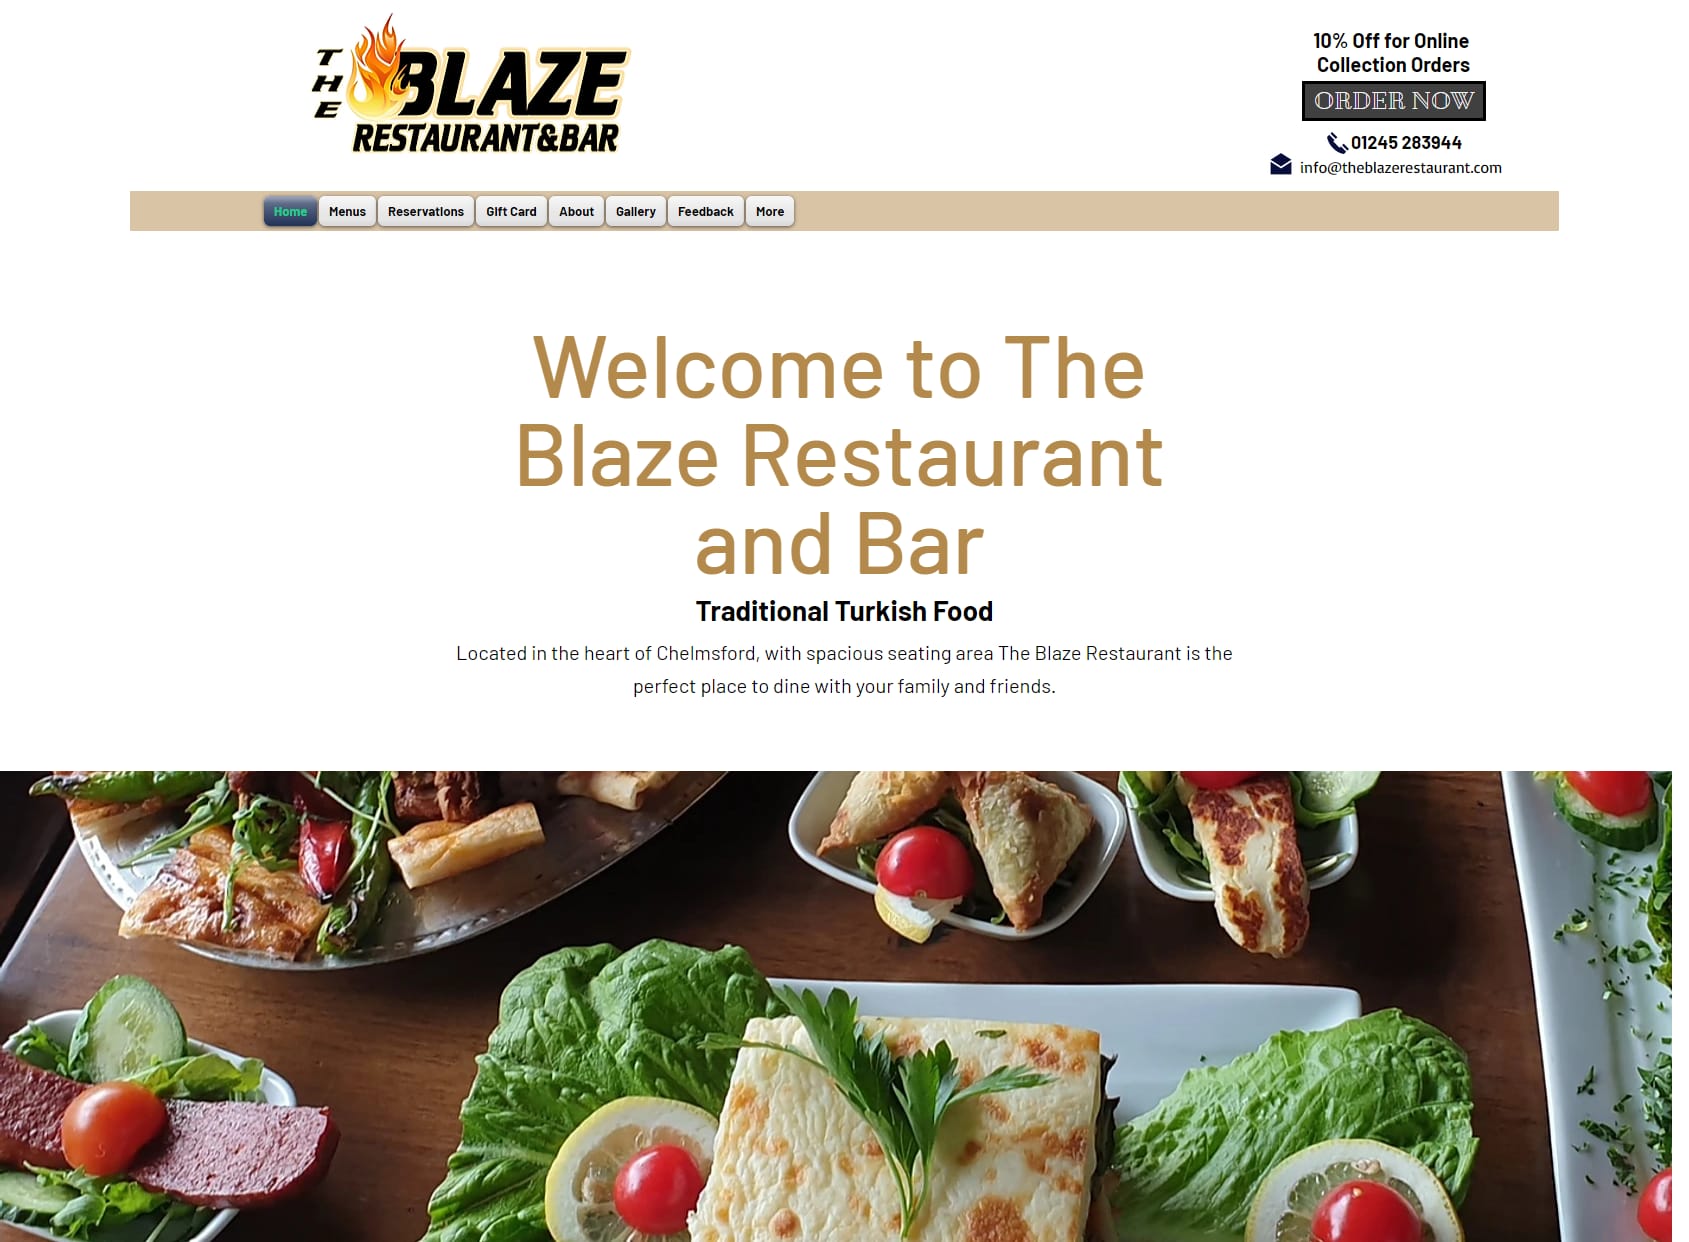 The Blaze Restaurant and Bar